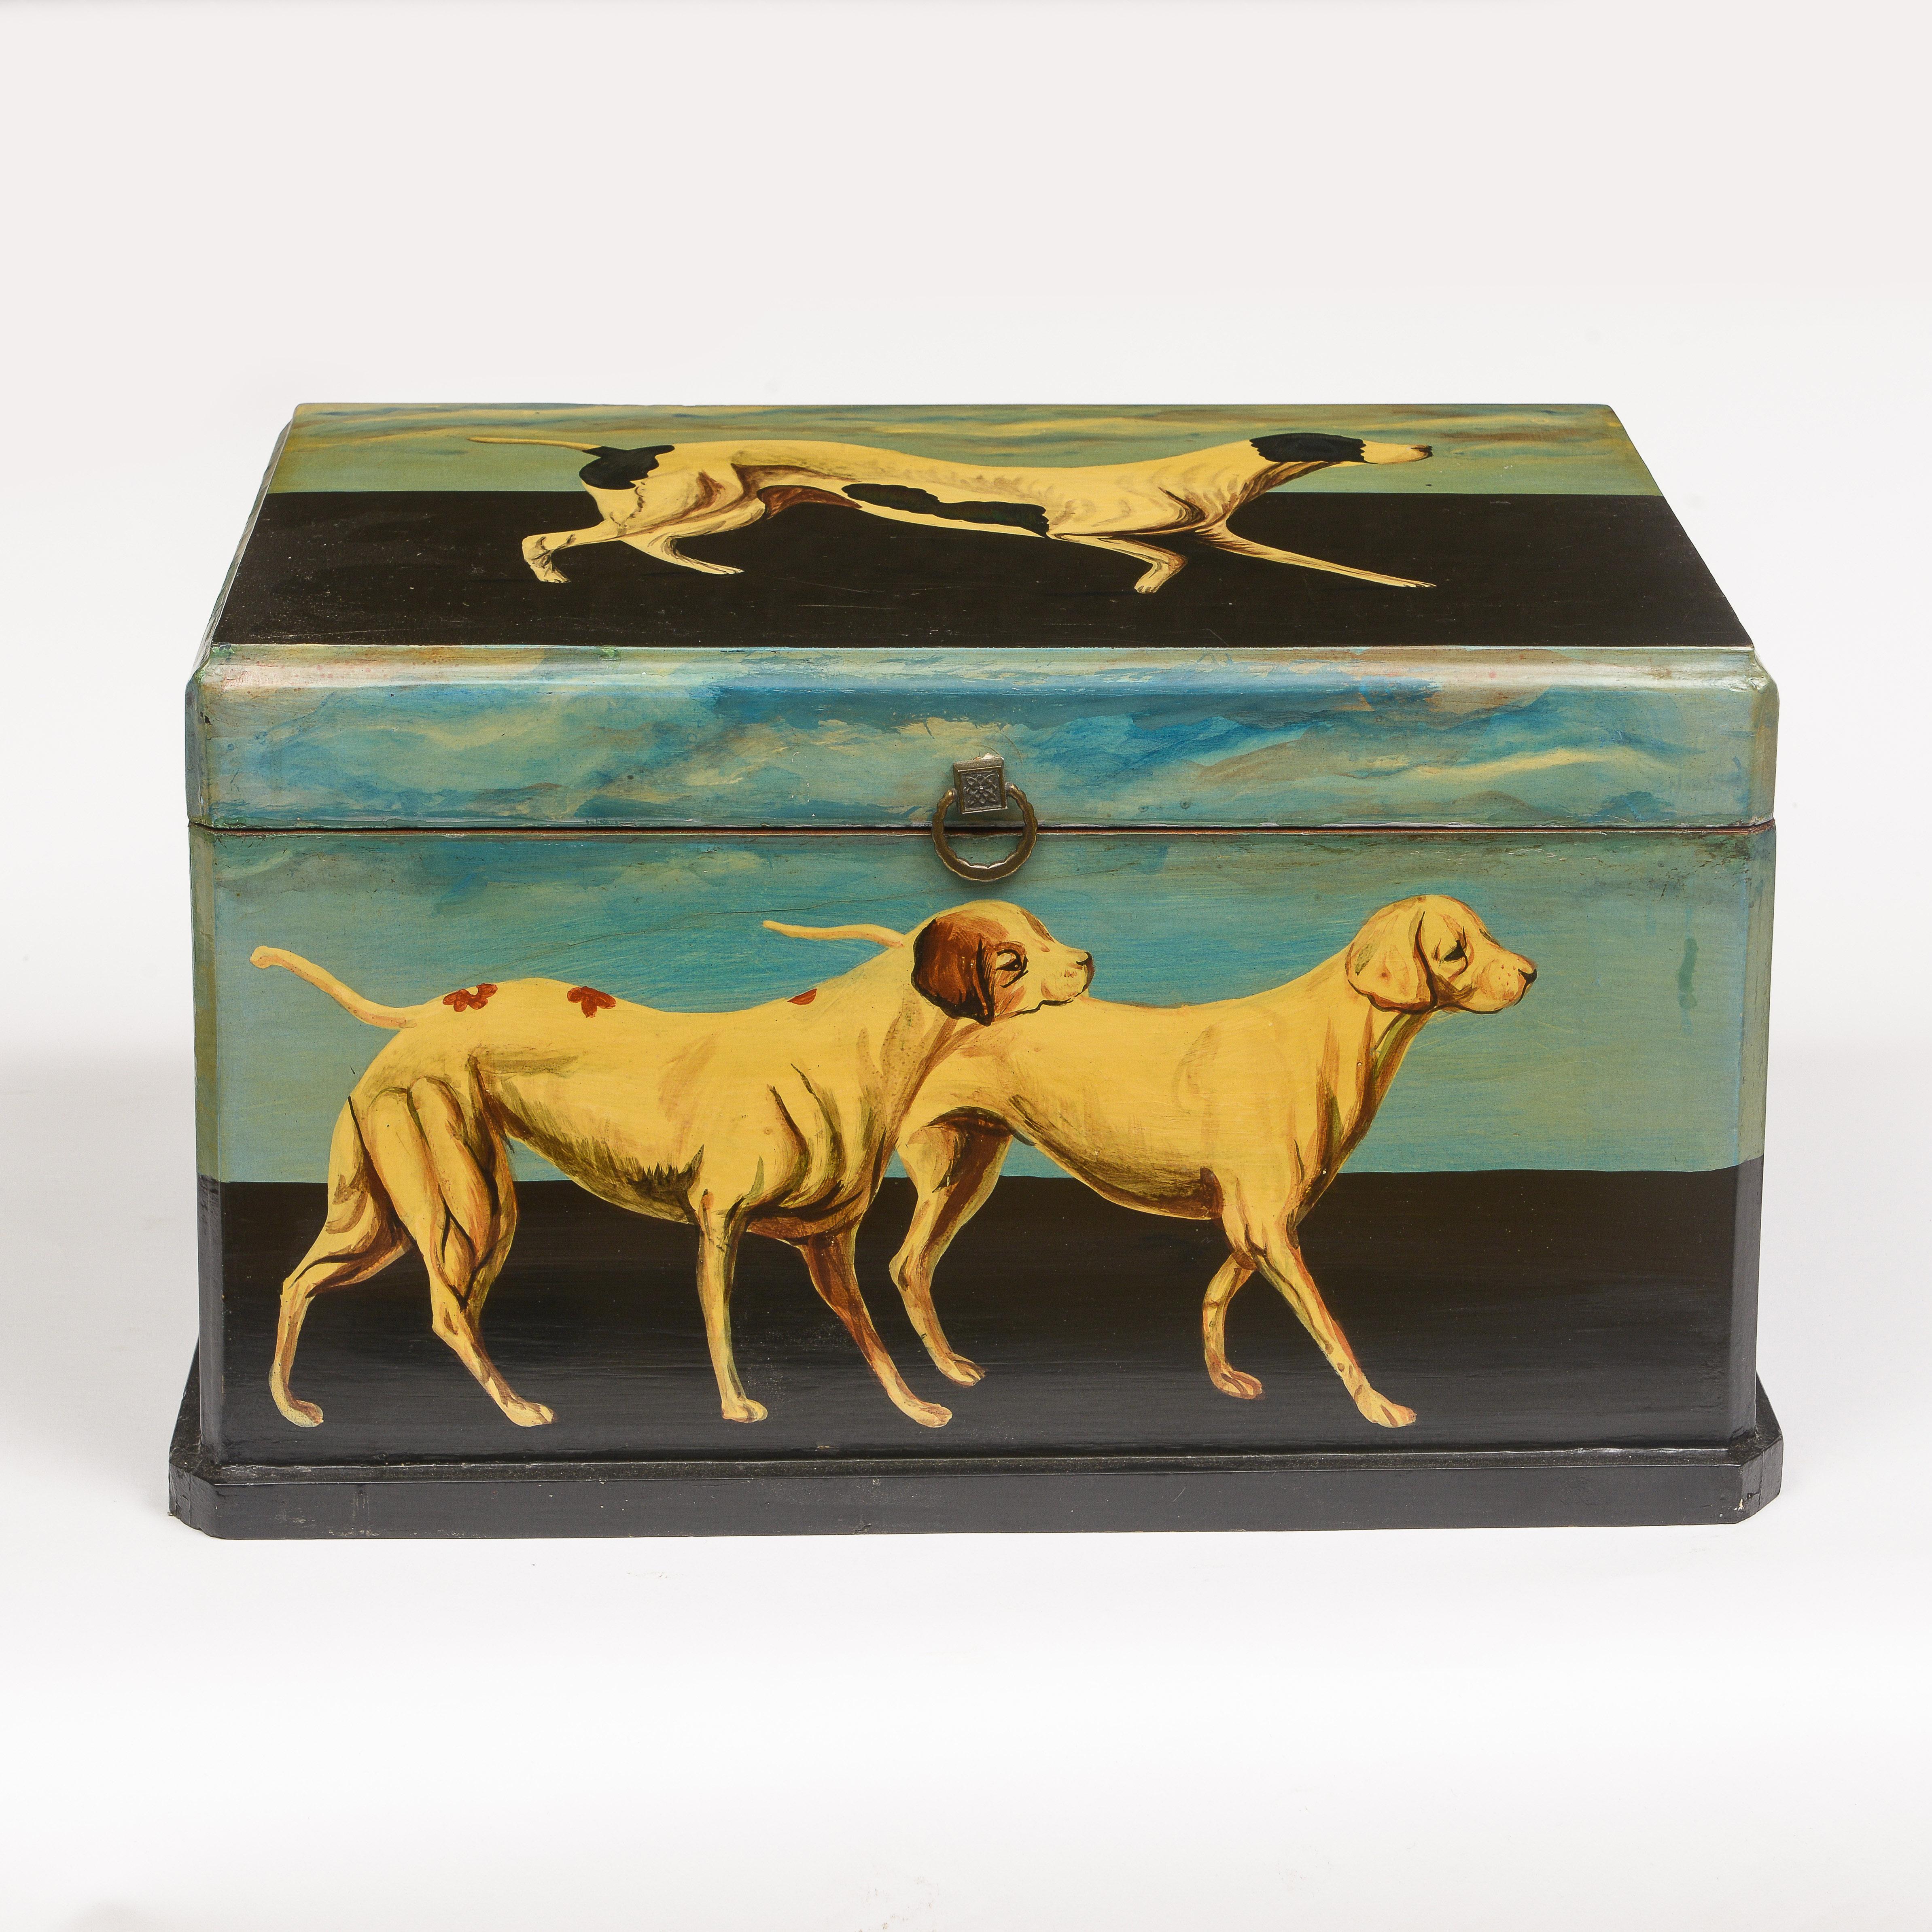 Boîte joliment peinte par un chien
Doublé d'un tissu vichy
Parfait pour ranger les accessoires pour chiens.